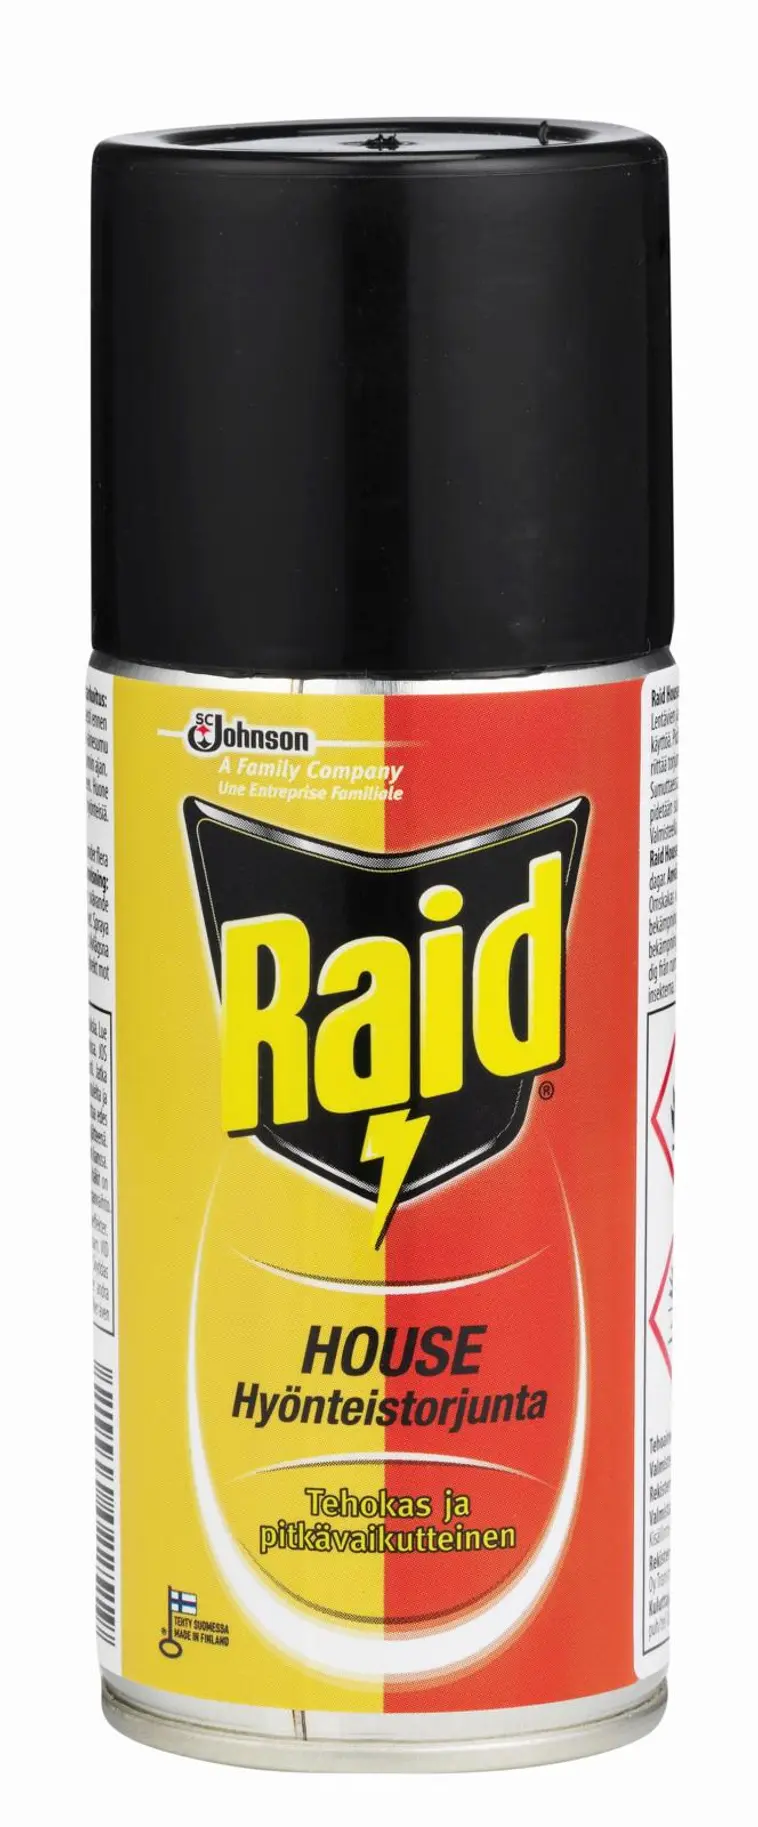 Raid House hyönteistorjunta aerosoli 150ml